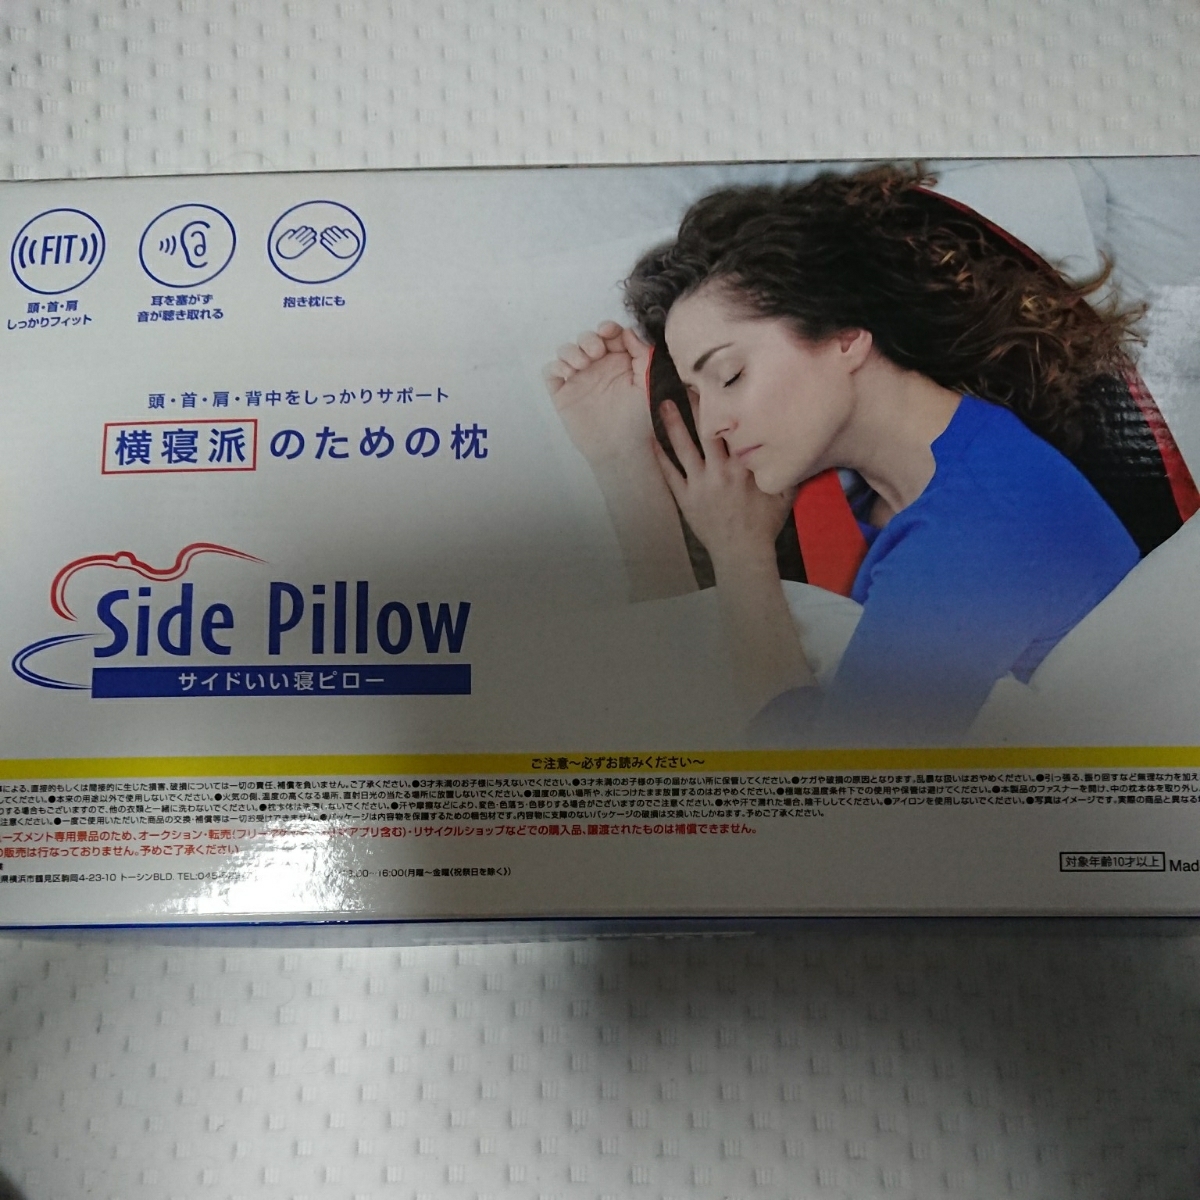  новый товар нераспечатанный боковой ... pillow Side Pillow подушка Dakimakura ... приз 